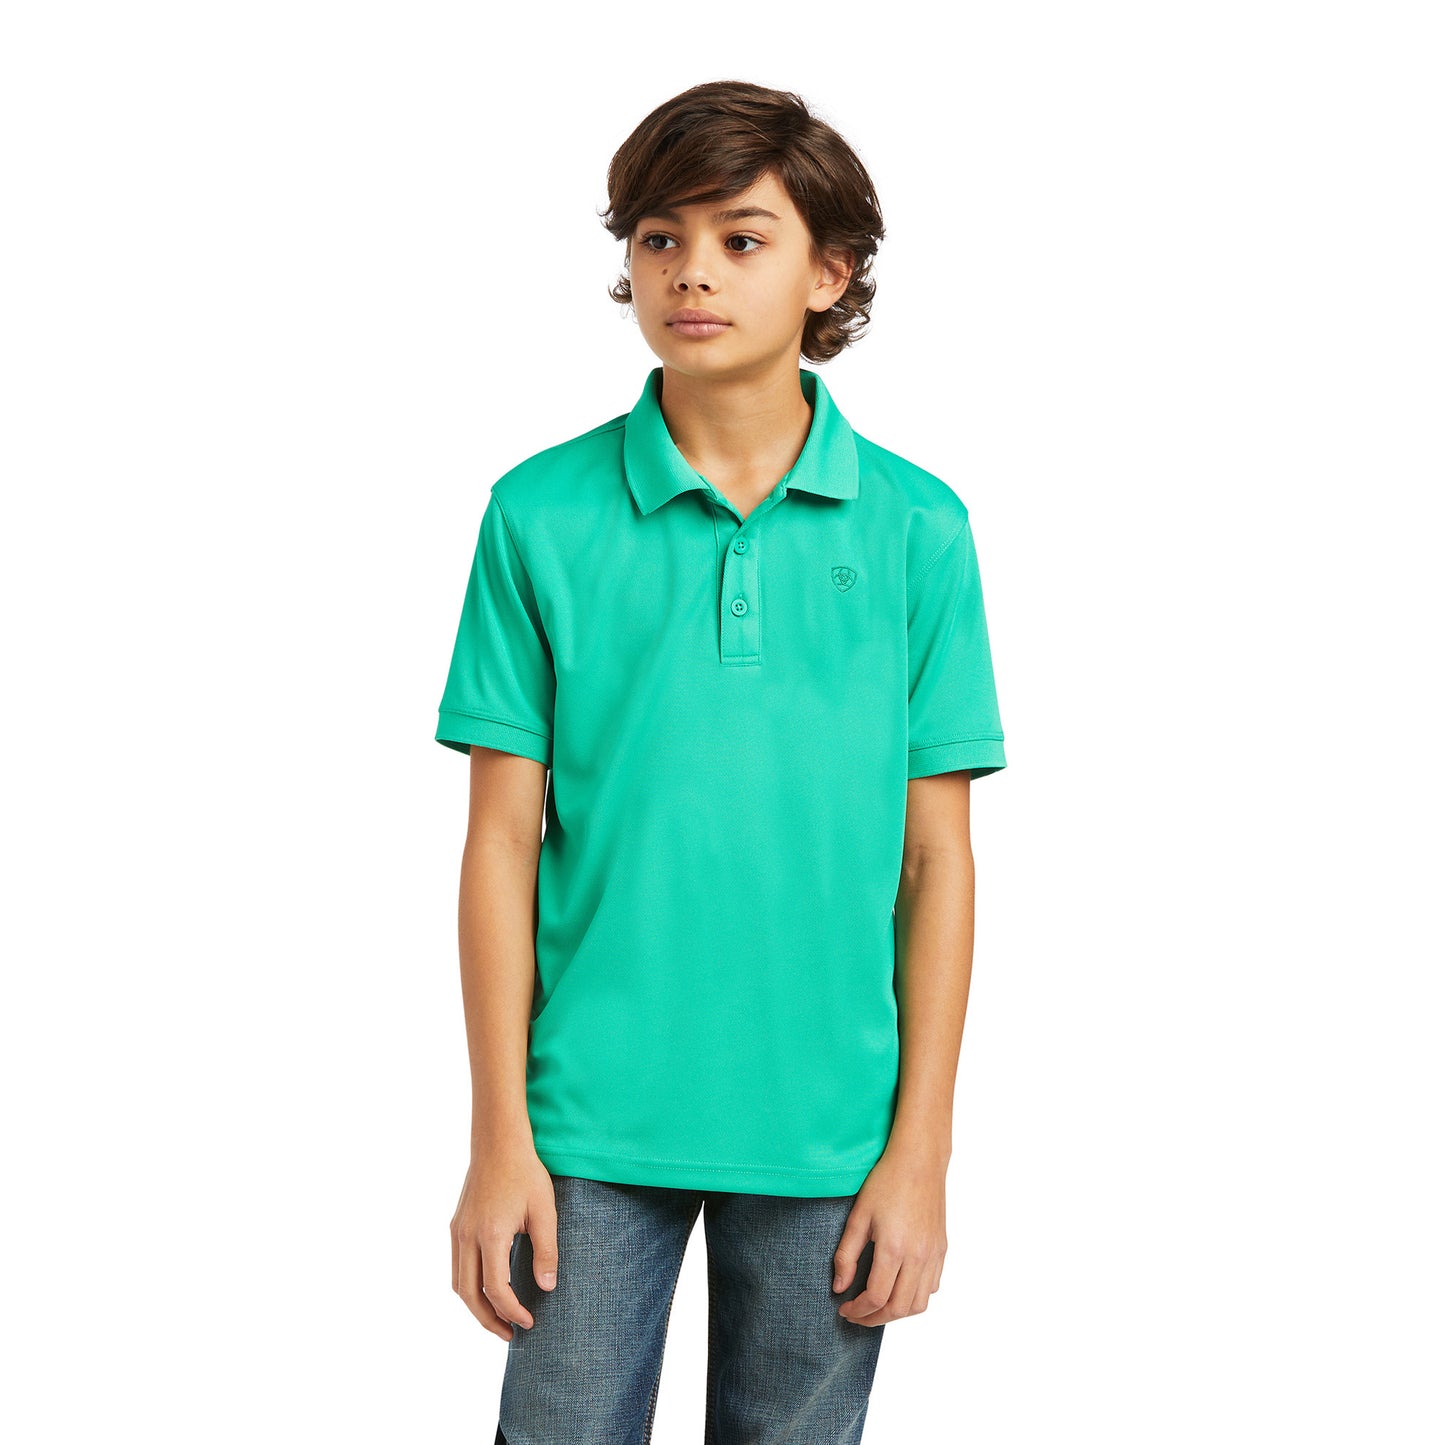 Ariat Boy's TEK Polo Mint Shirt 10039395